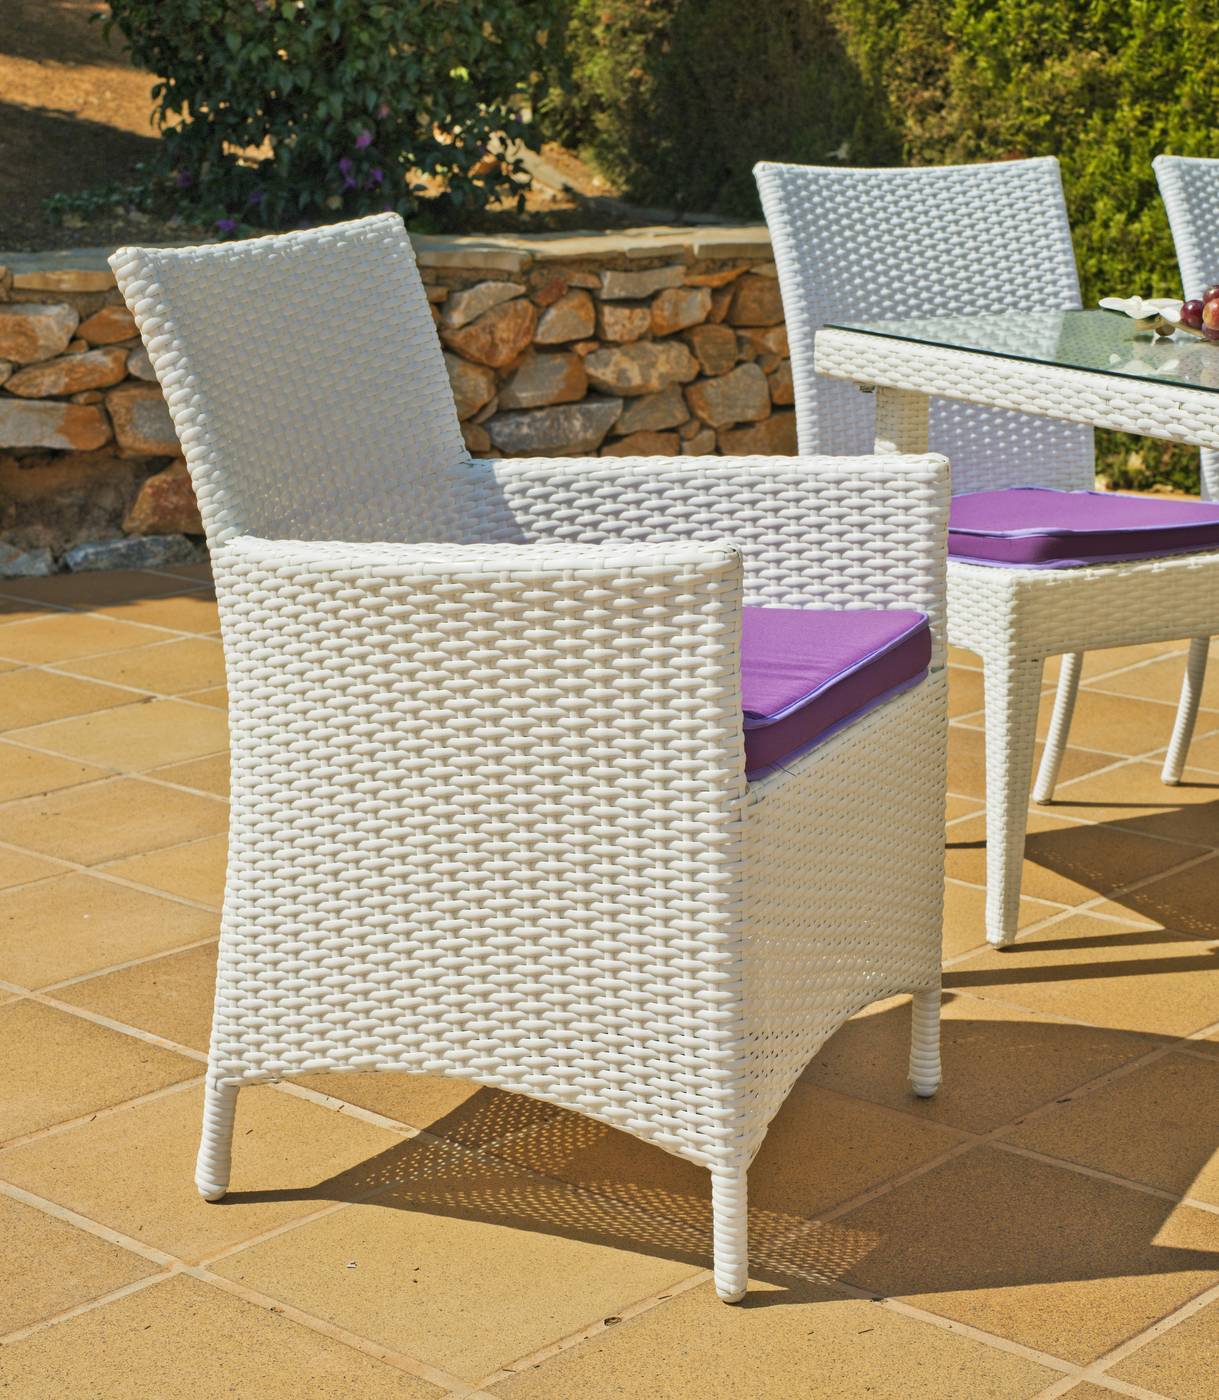 Conjunto Ratán Sint. Sandra 180-6 - Conjunto de ratán sintético color blanco: 1 mesa de 180 cm. + 6 sillones confort + 6 cojines